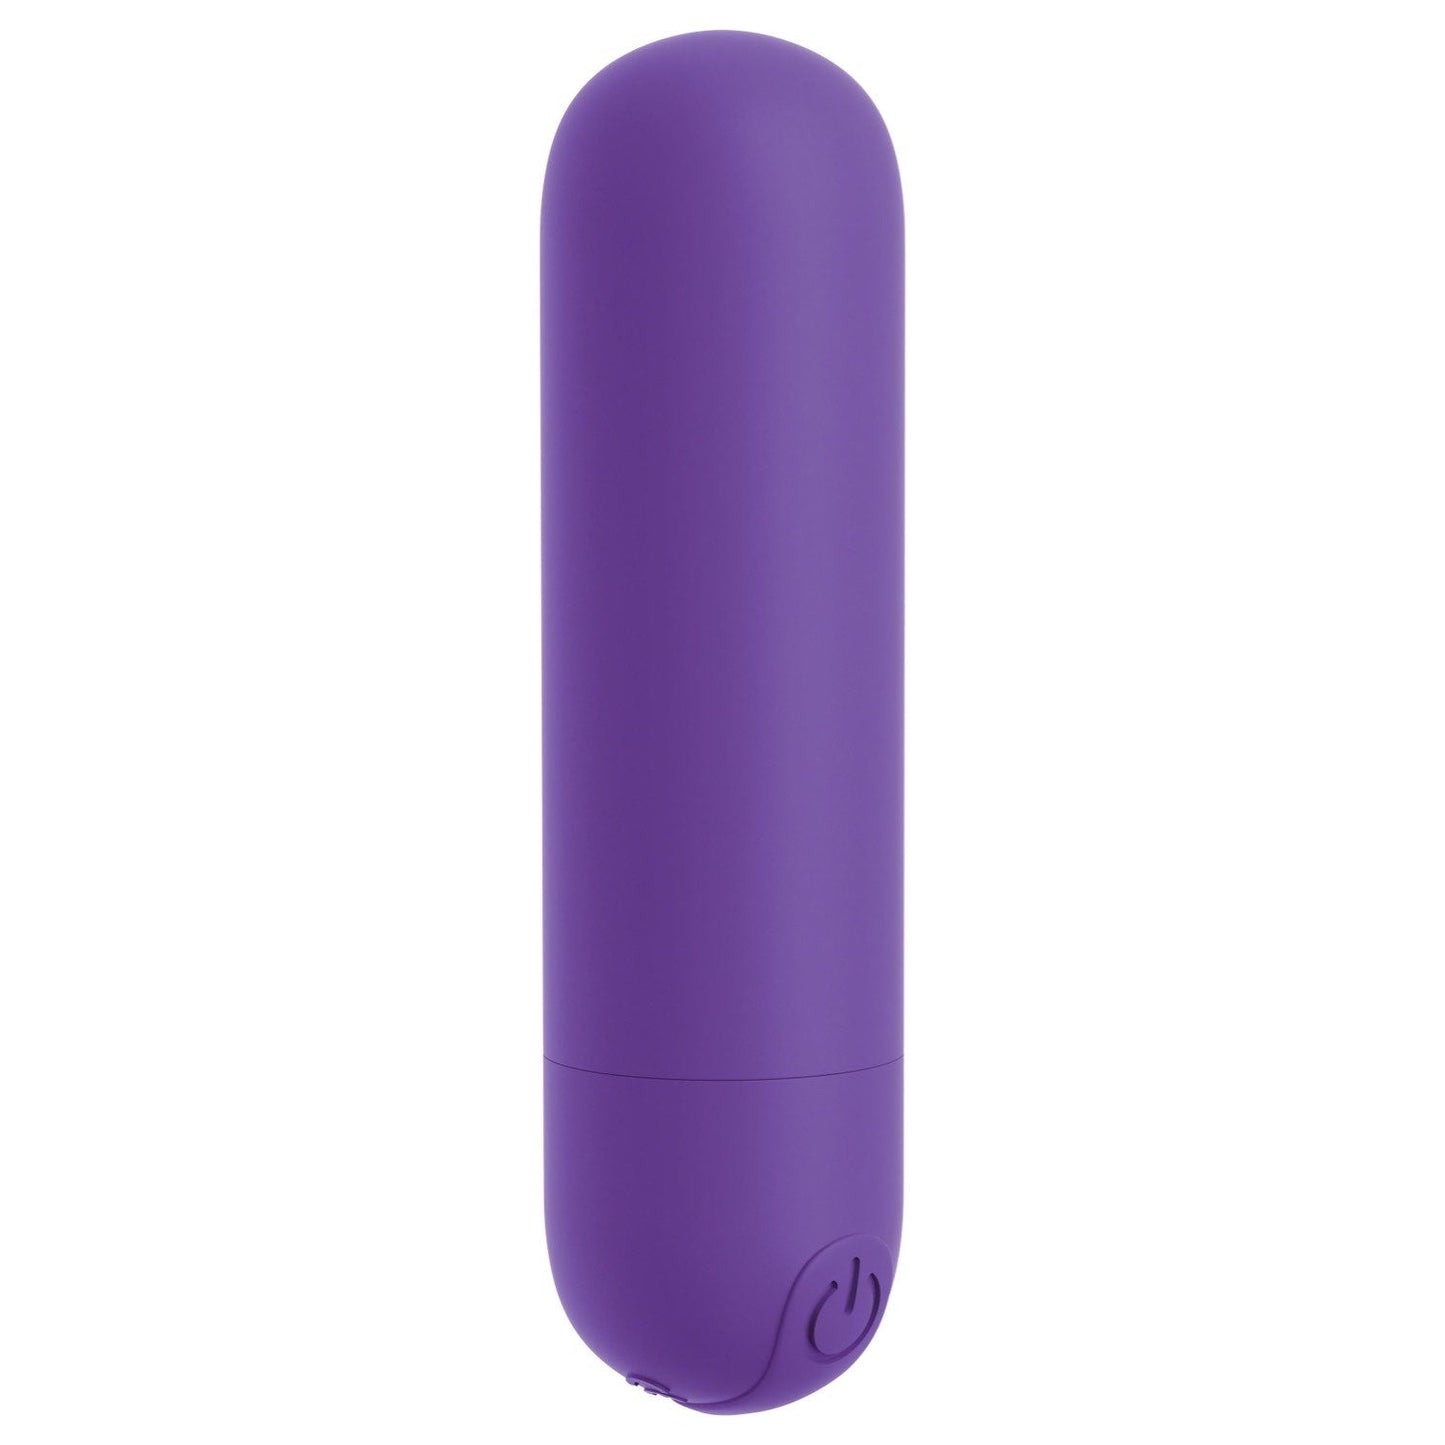 我的天啊！ Bullets #Play - 紫色 USB 可充电子弹头